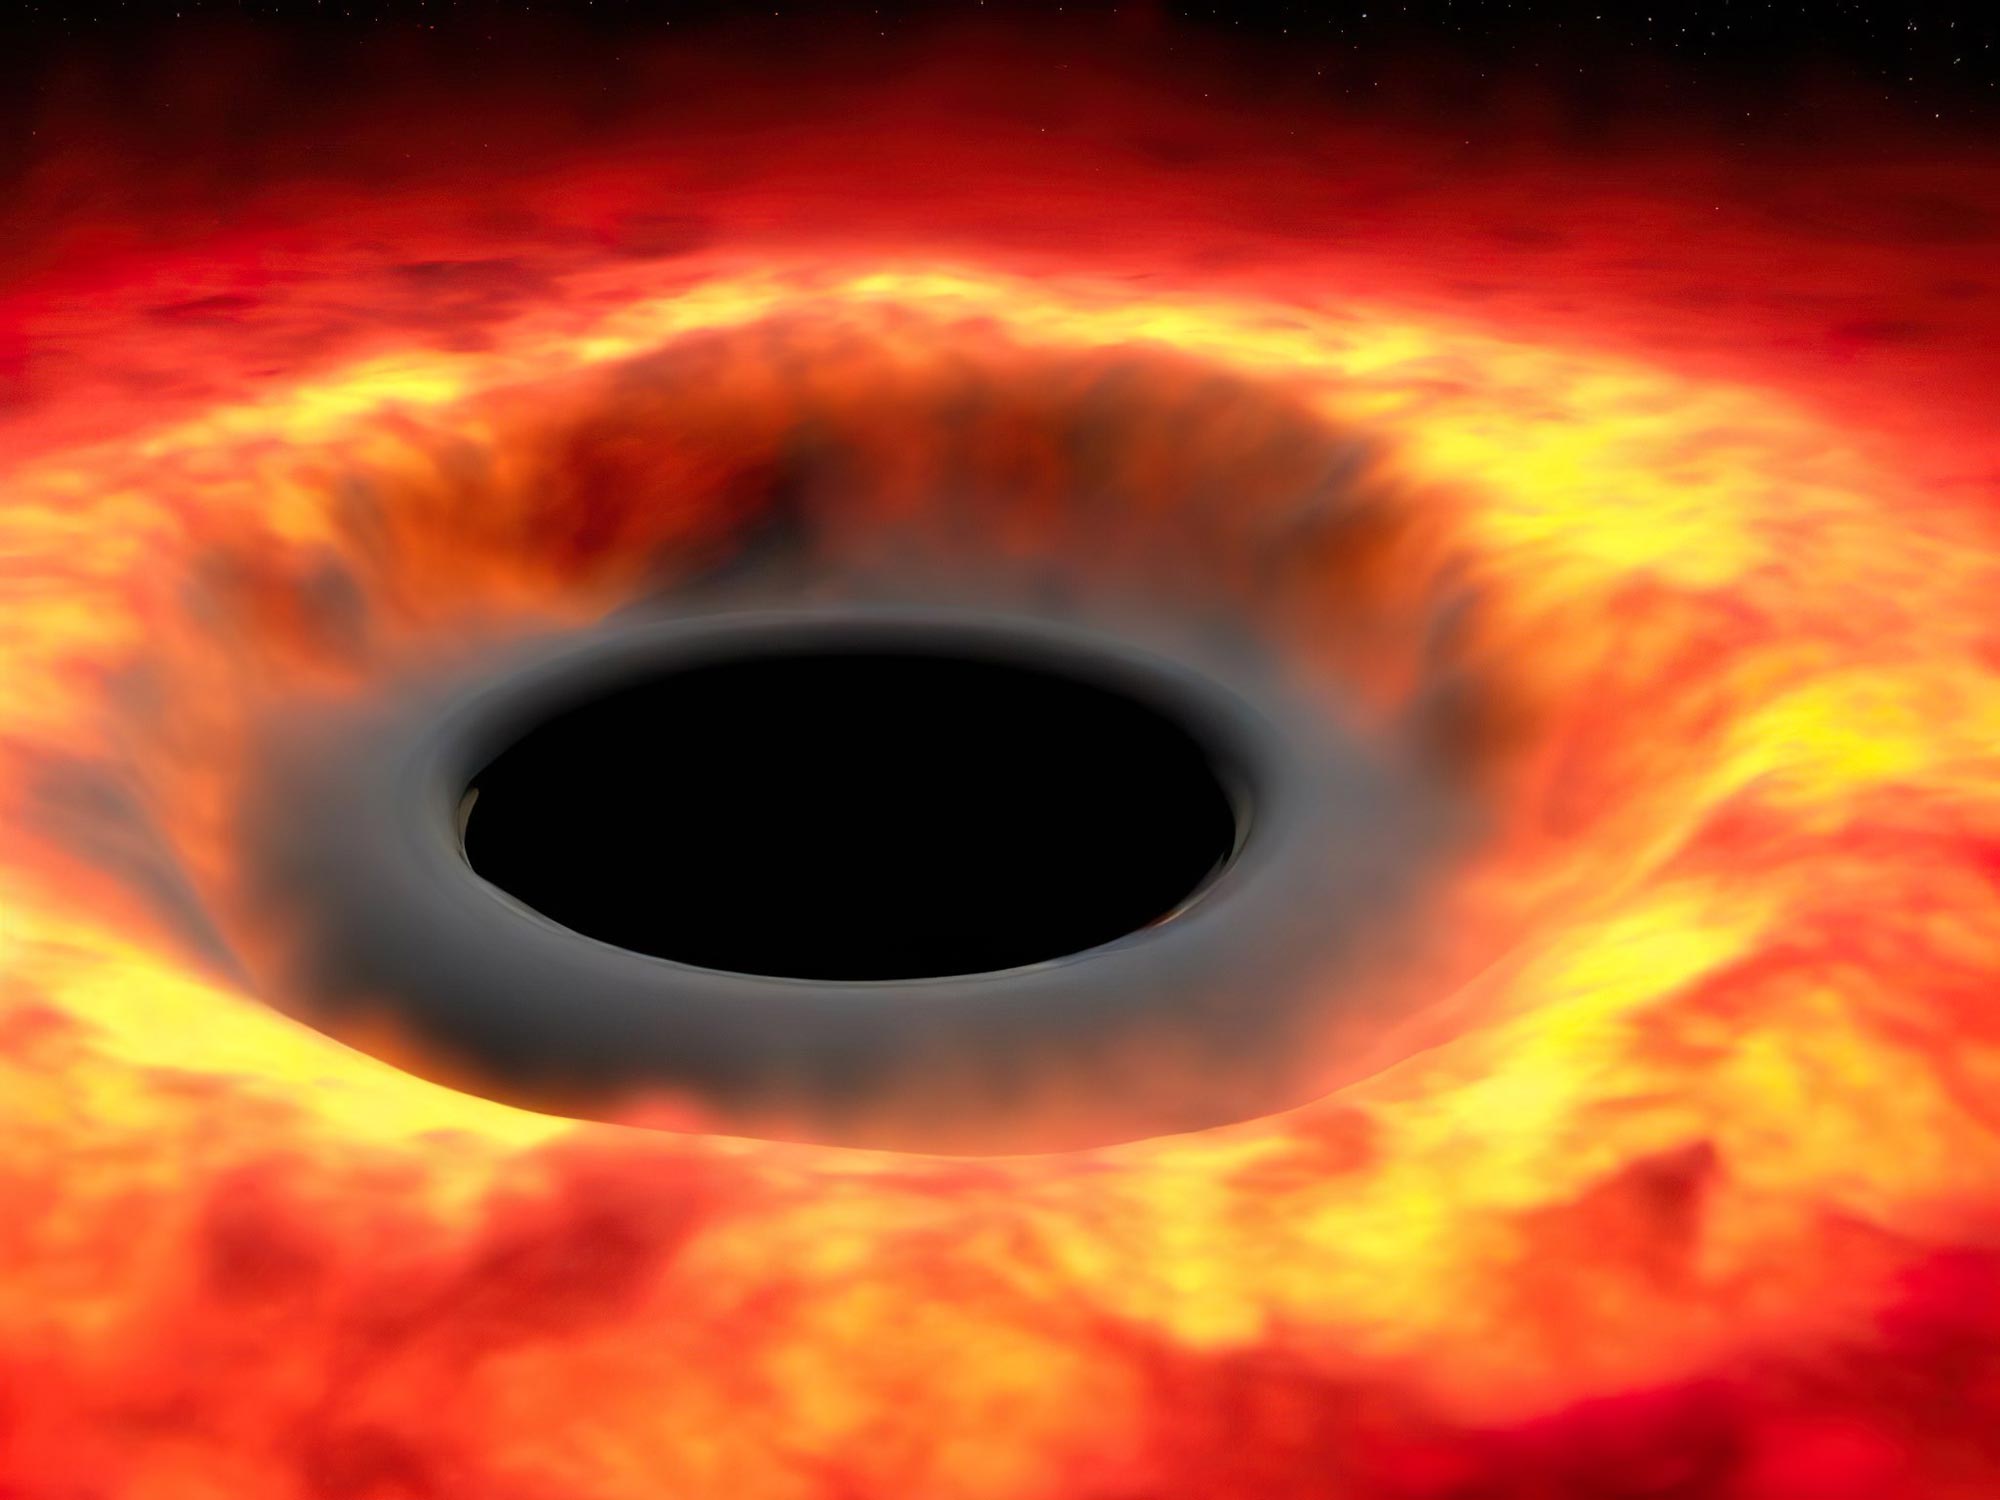 كل شيء في الكون معرض لخطر التبخر – نظرية هوكينغ للإشعاع لا تقتصر على الثقوب السوداء